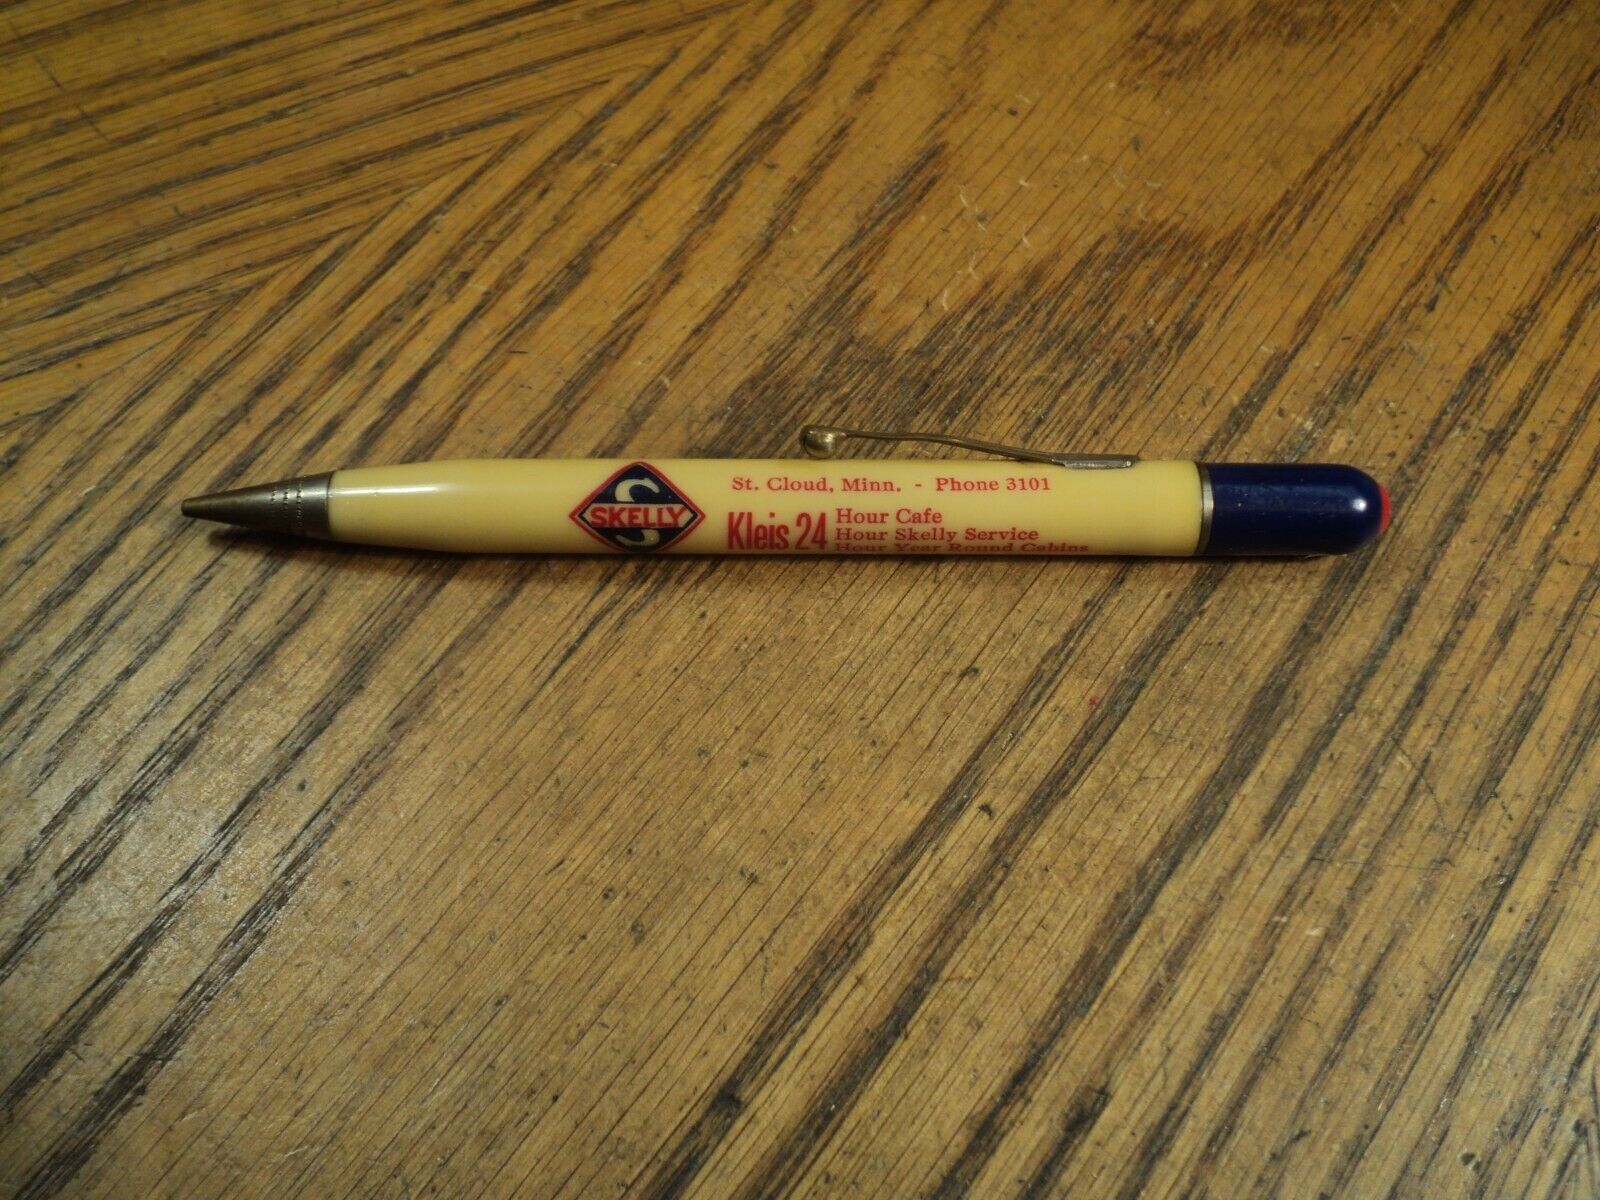 Vintage Mechanical Pencil   Skelly & Kleis 24 Hour   5-1/8\